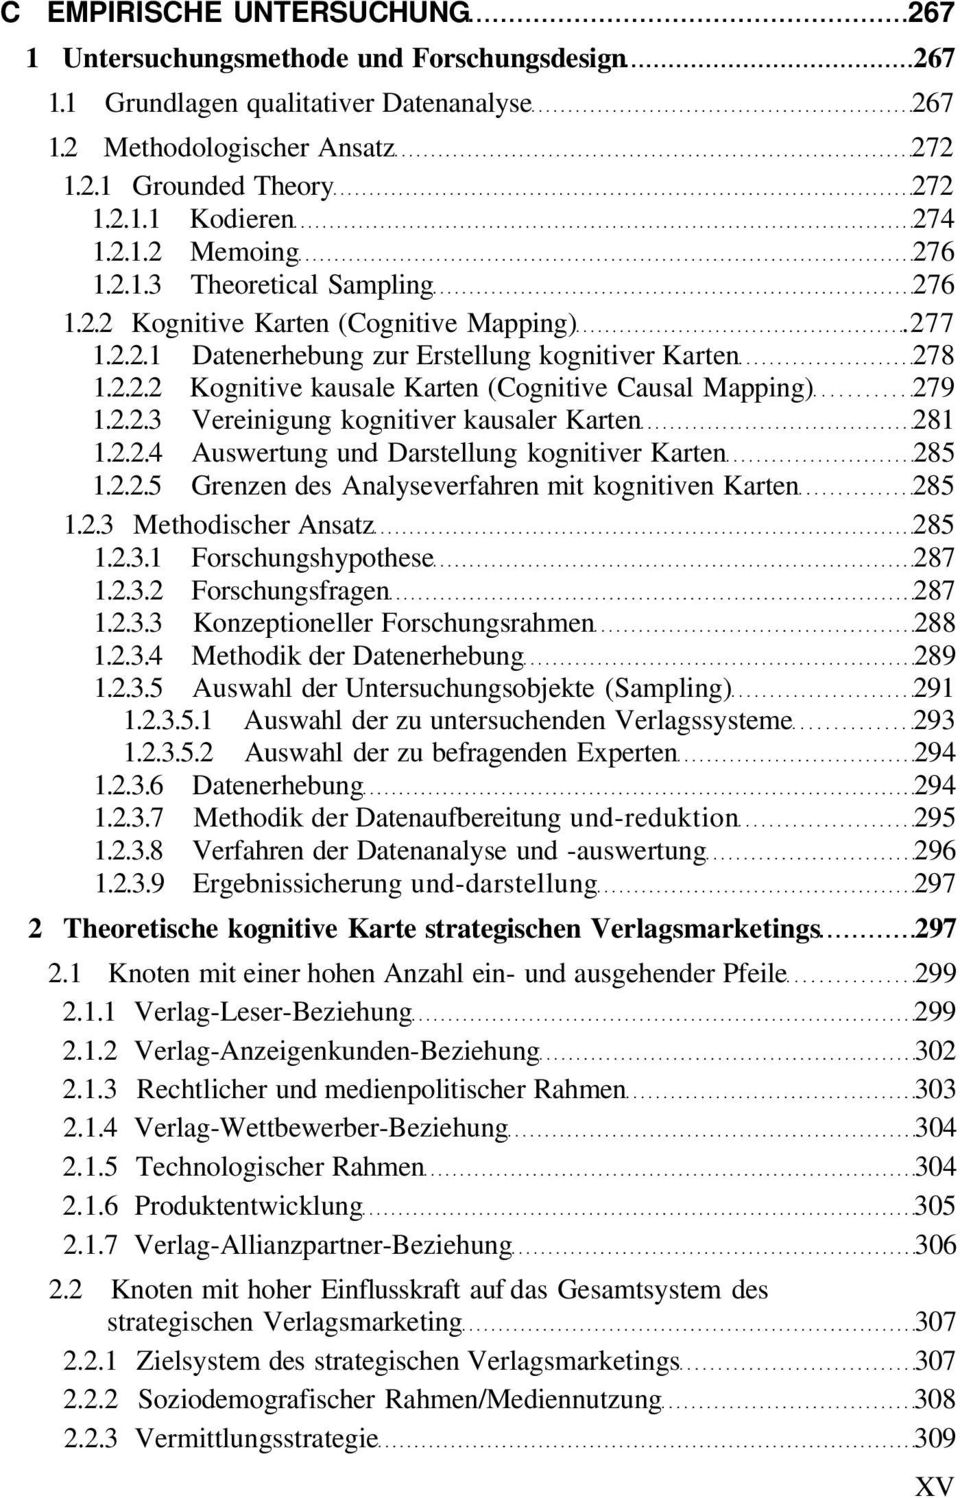 2.2.3 Vereinigung kognitiver kausaler Karten 281 1.2.2.4 Auswertung und Darstellung kognitiver Karten 285 1.2.2.5 Grenzen des Analyseverfahren mit kognitiven Karten 285 1.2.3 Methodischer Ansatz 285 1.